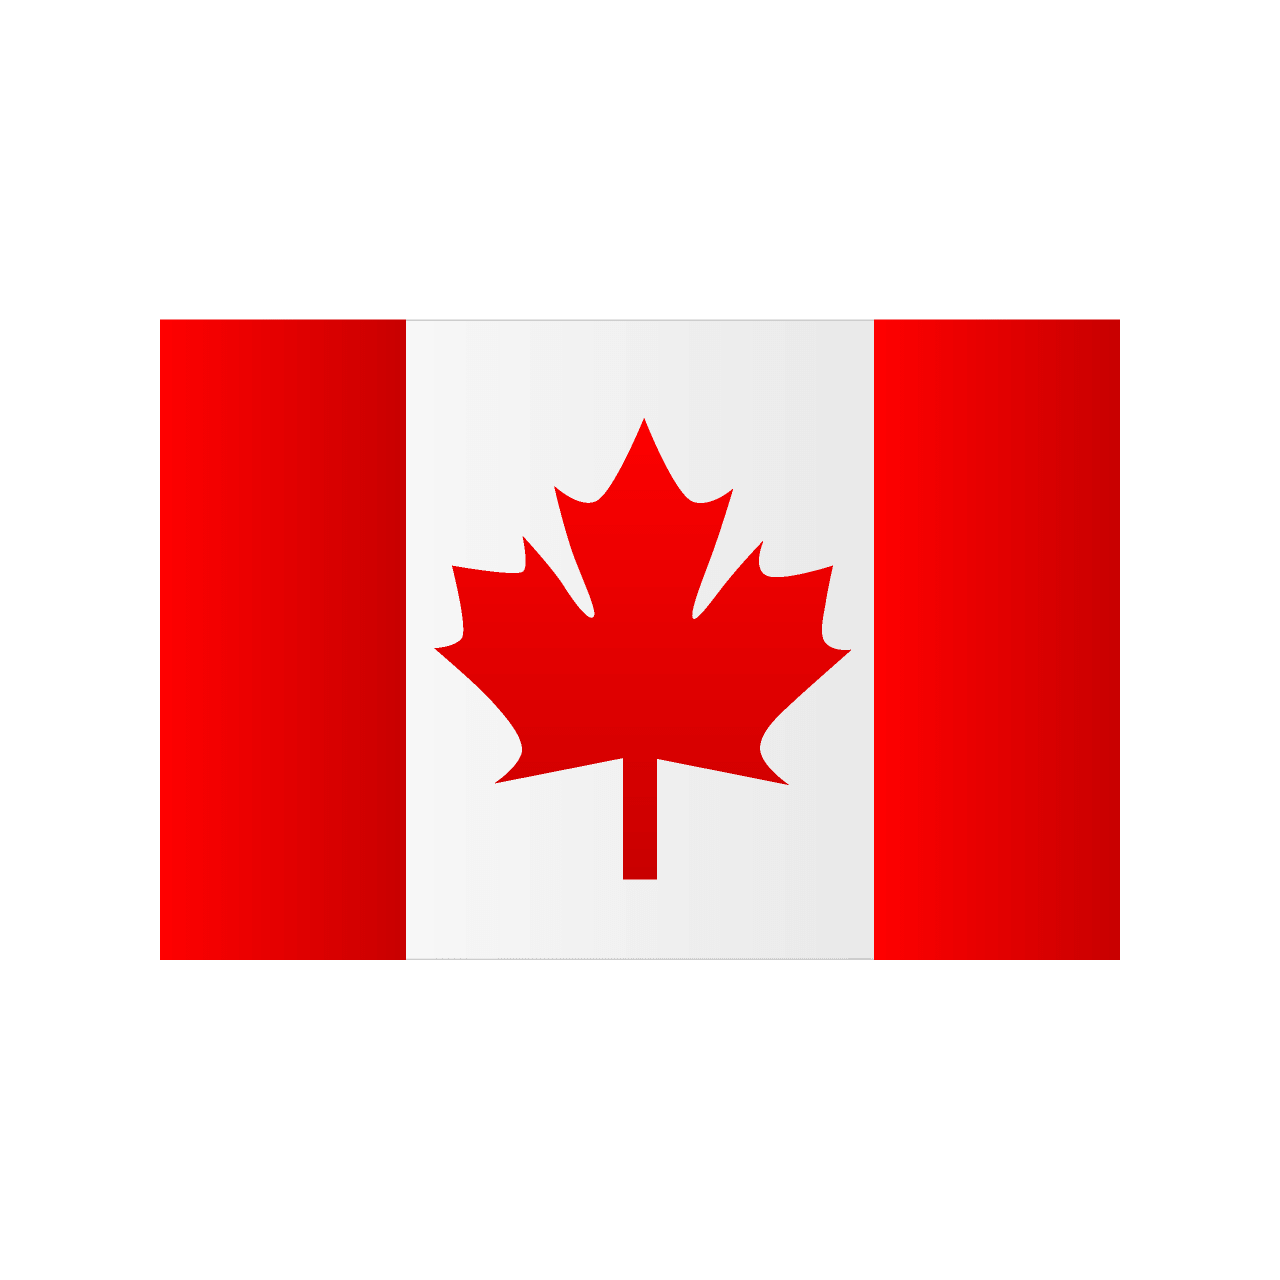 カナダ国旗 イラスト素材 超多くの無料かわいいイラスト素材